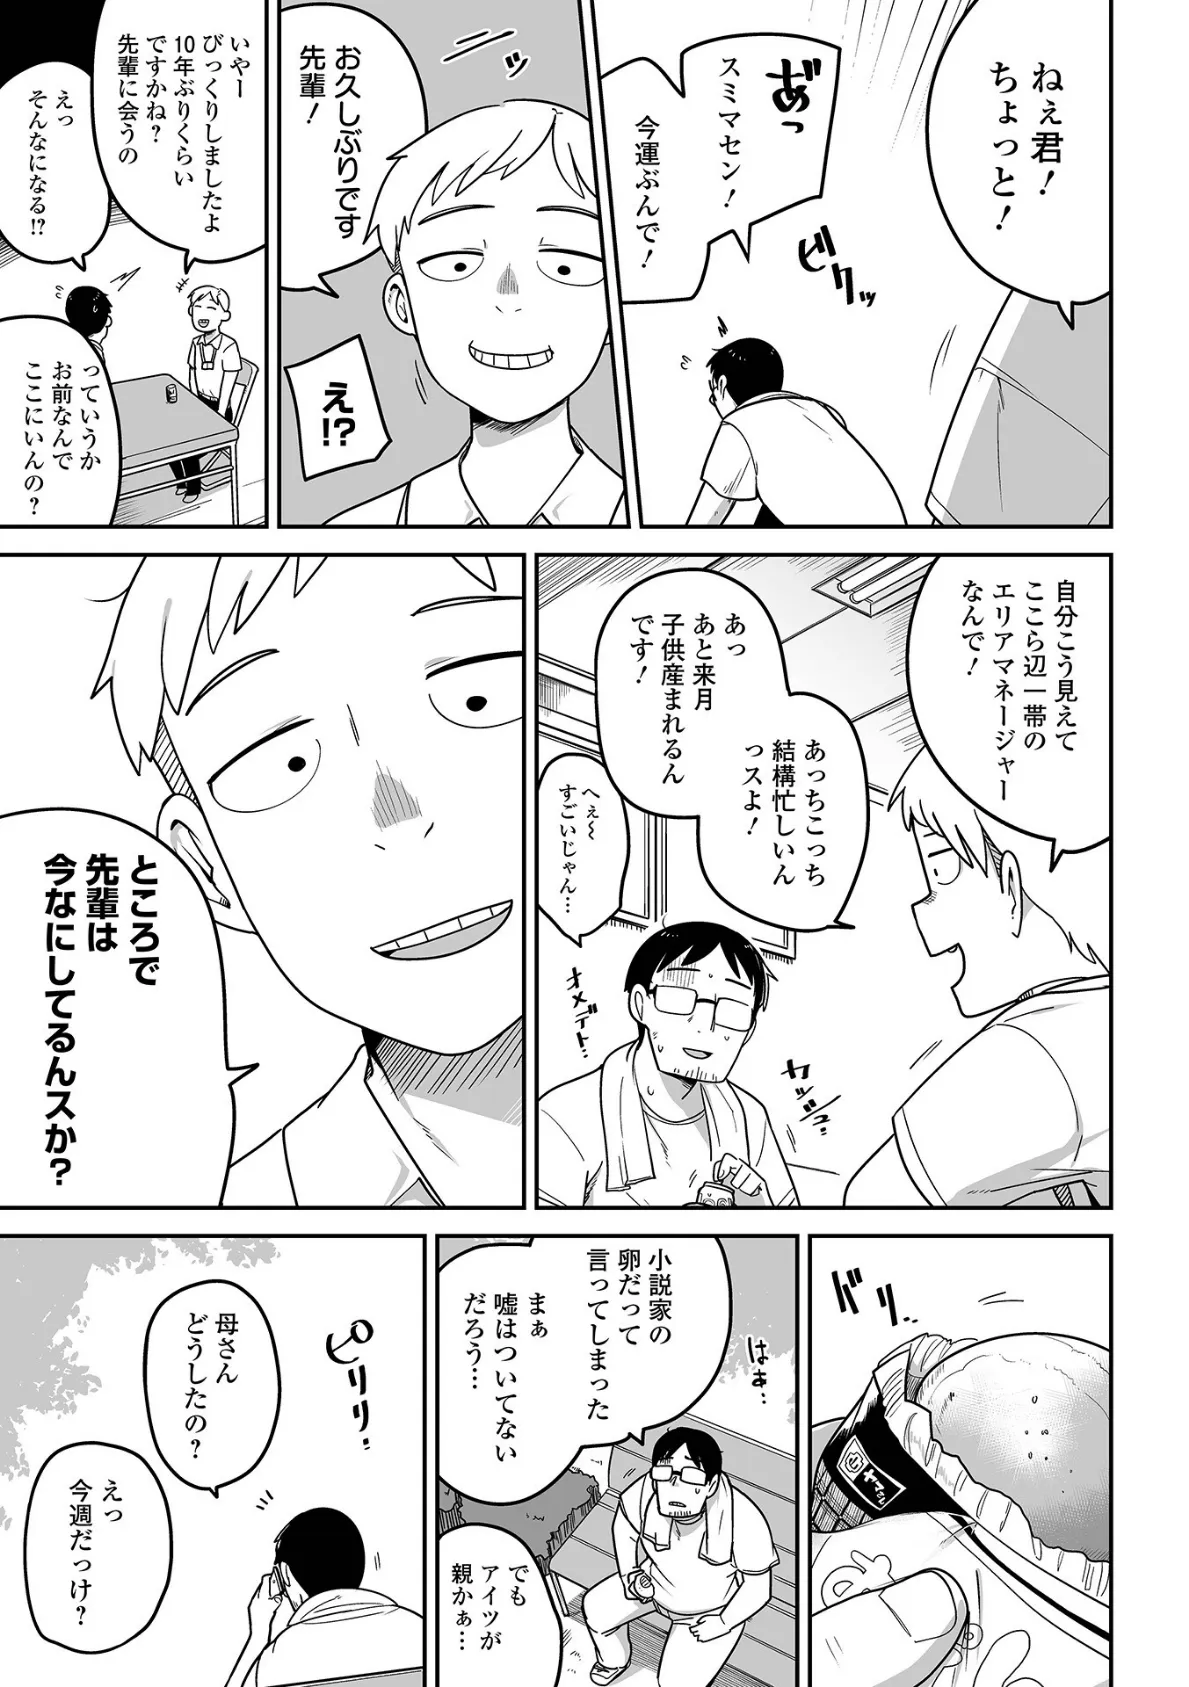 メスガキ vs ワナビおじさんハーフ版 5ページ